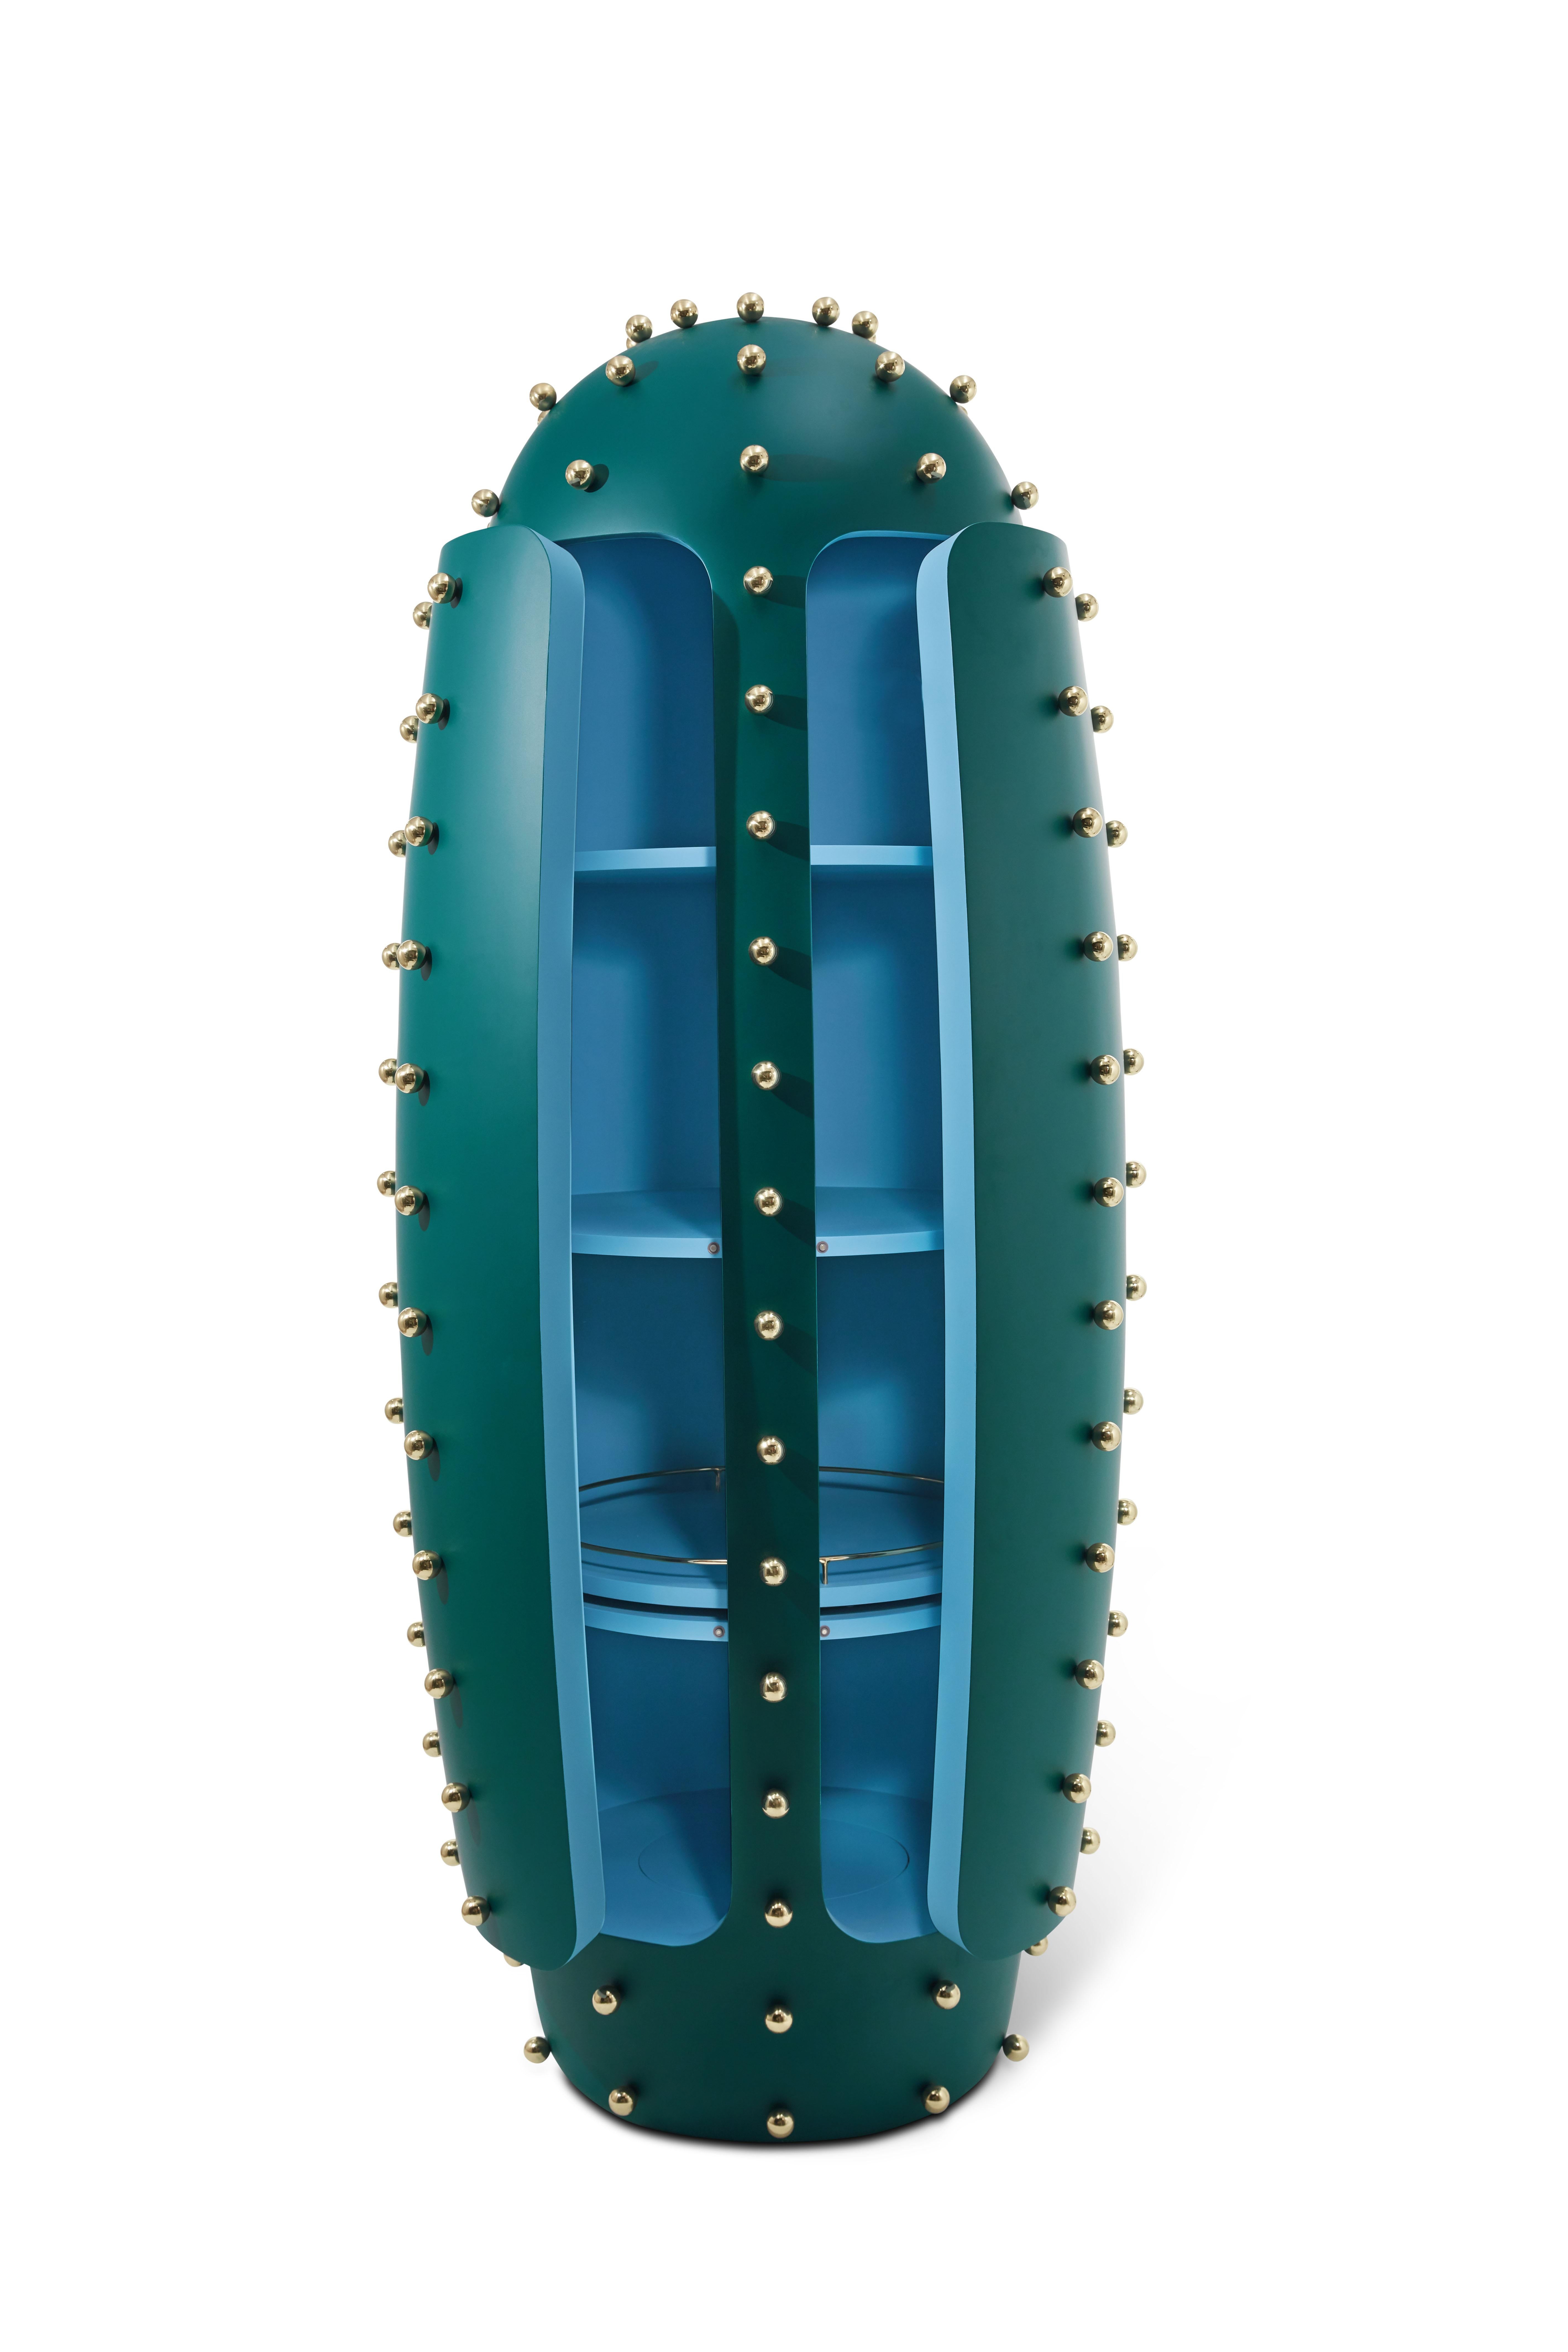 Le meuble-bar Oasis en vert avec boules en laiton de Richard Hutten est un nouveau meuble vert foncé avec des intérieurs bleu pâle. Il est recouvert de sphères en laiton étincelantes qui rappellent les épines d'un cactus succulent.

La collection